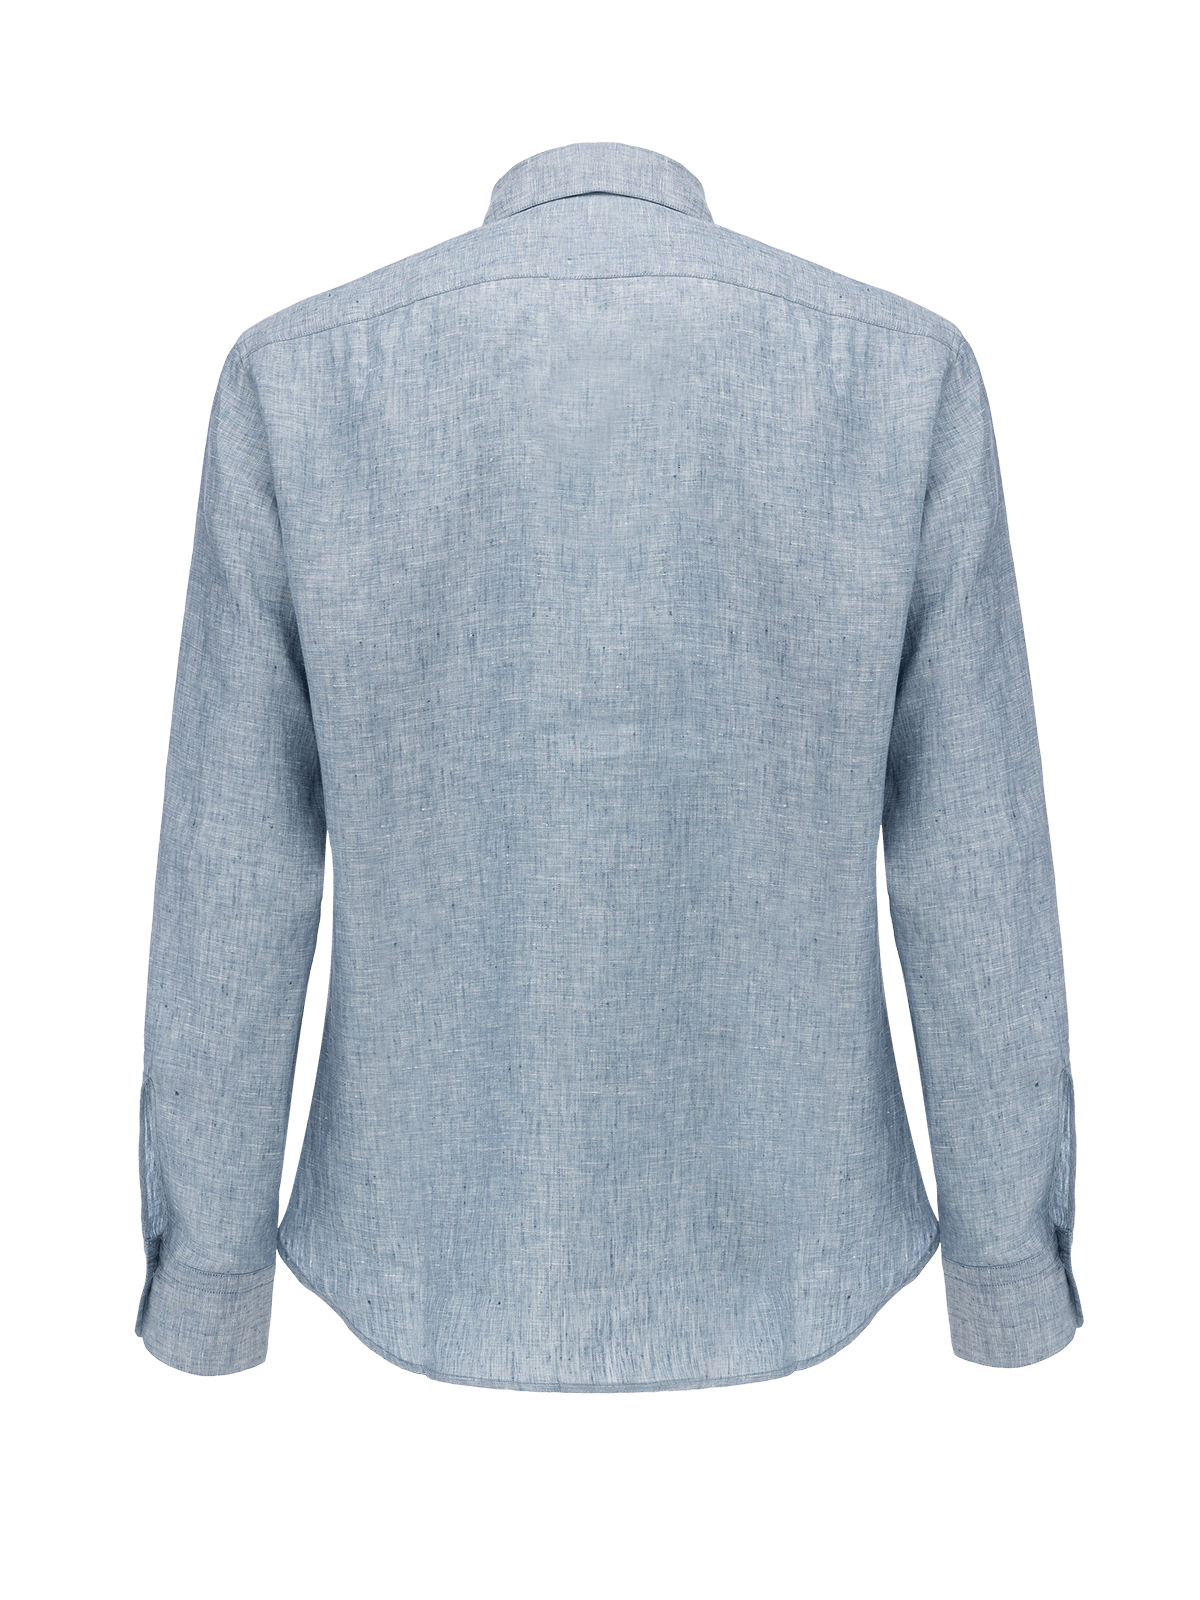 Reversible linen shirt for man 100% Capri linen light jeans shirt back side 2